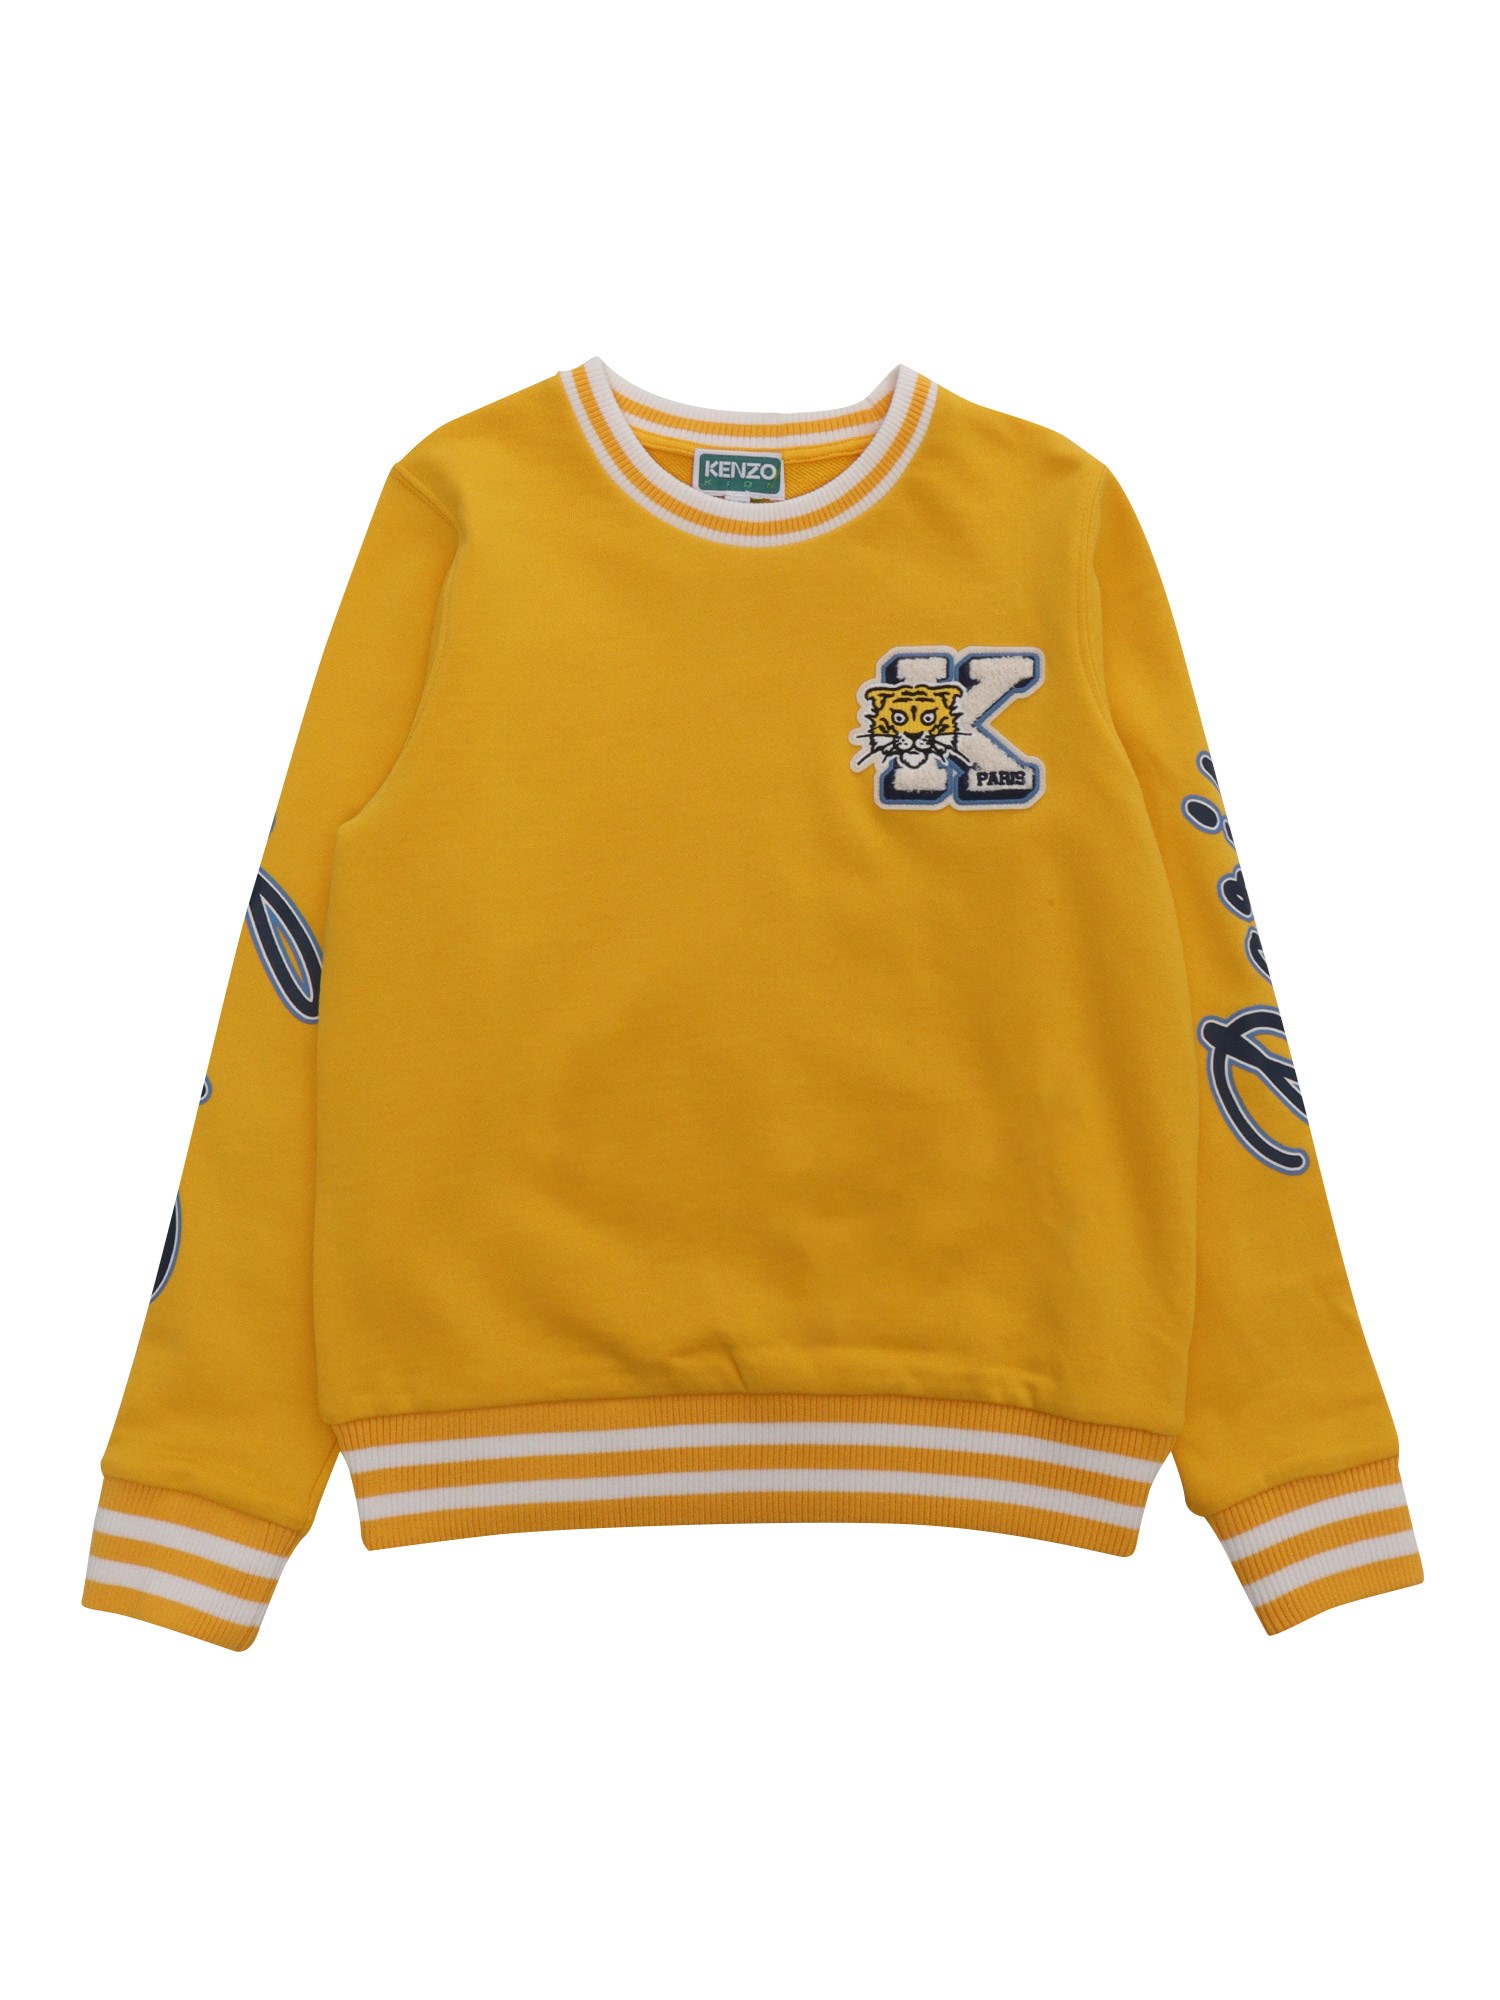 Kenzo Kids' Yellow Sweater